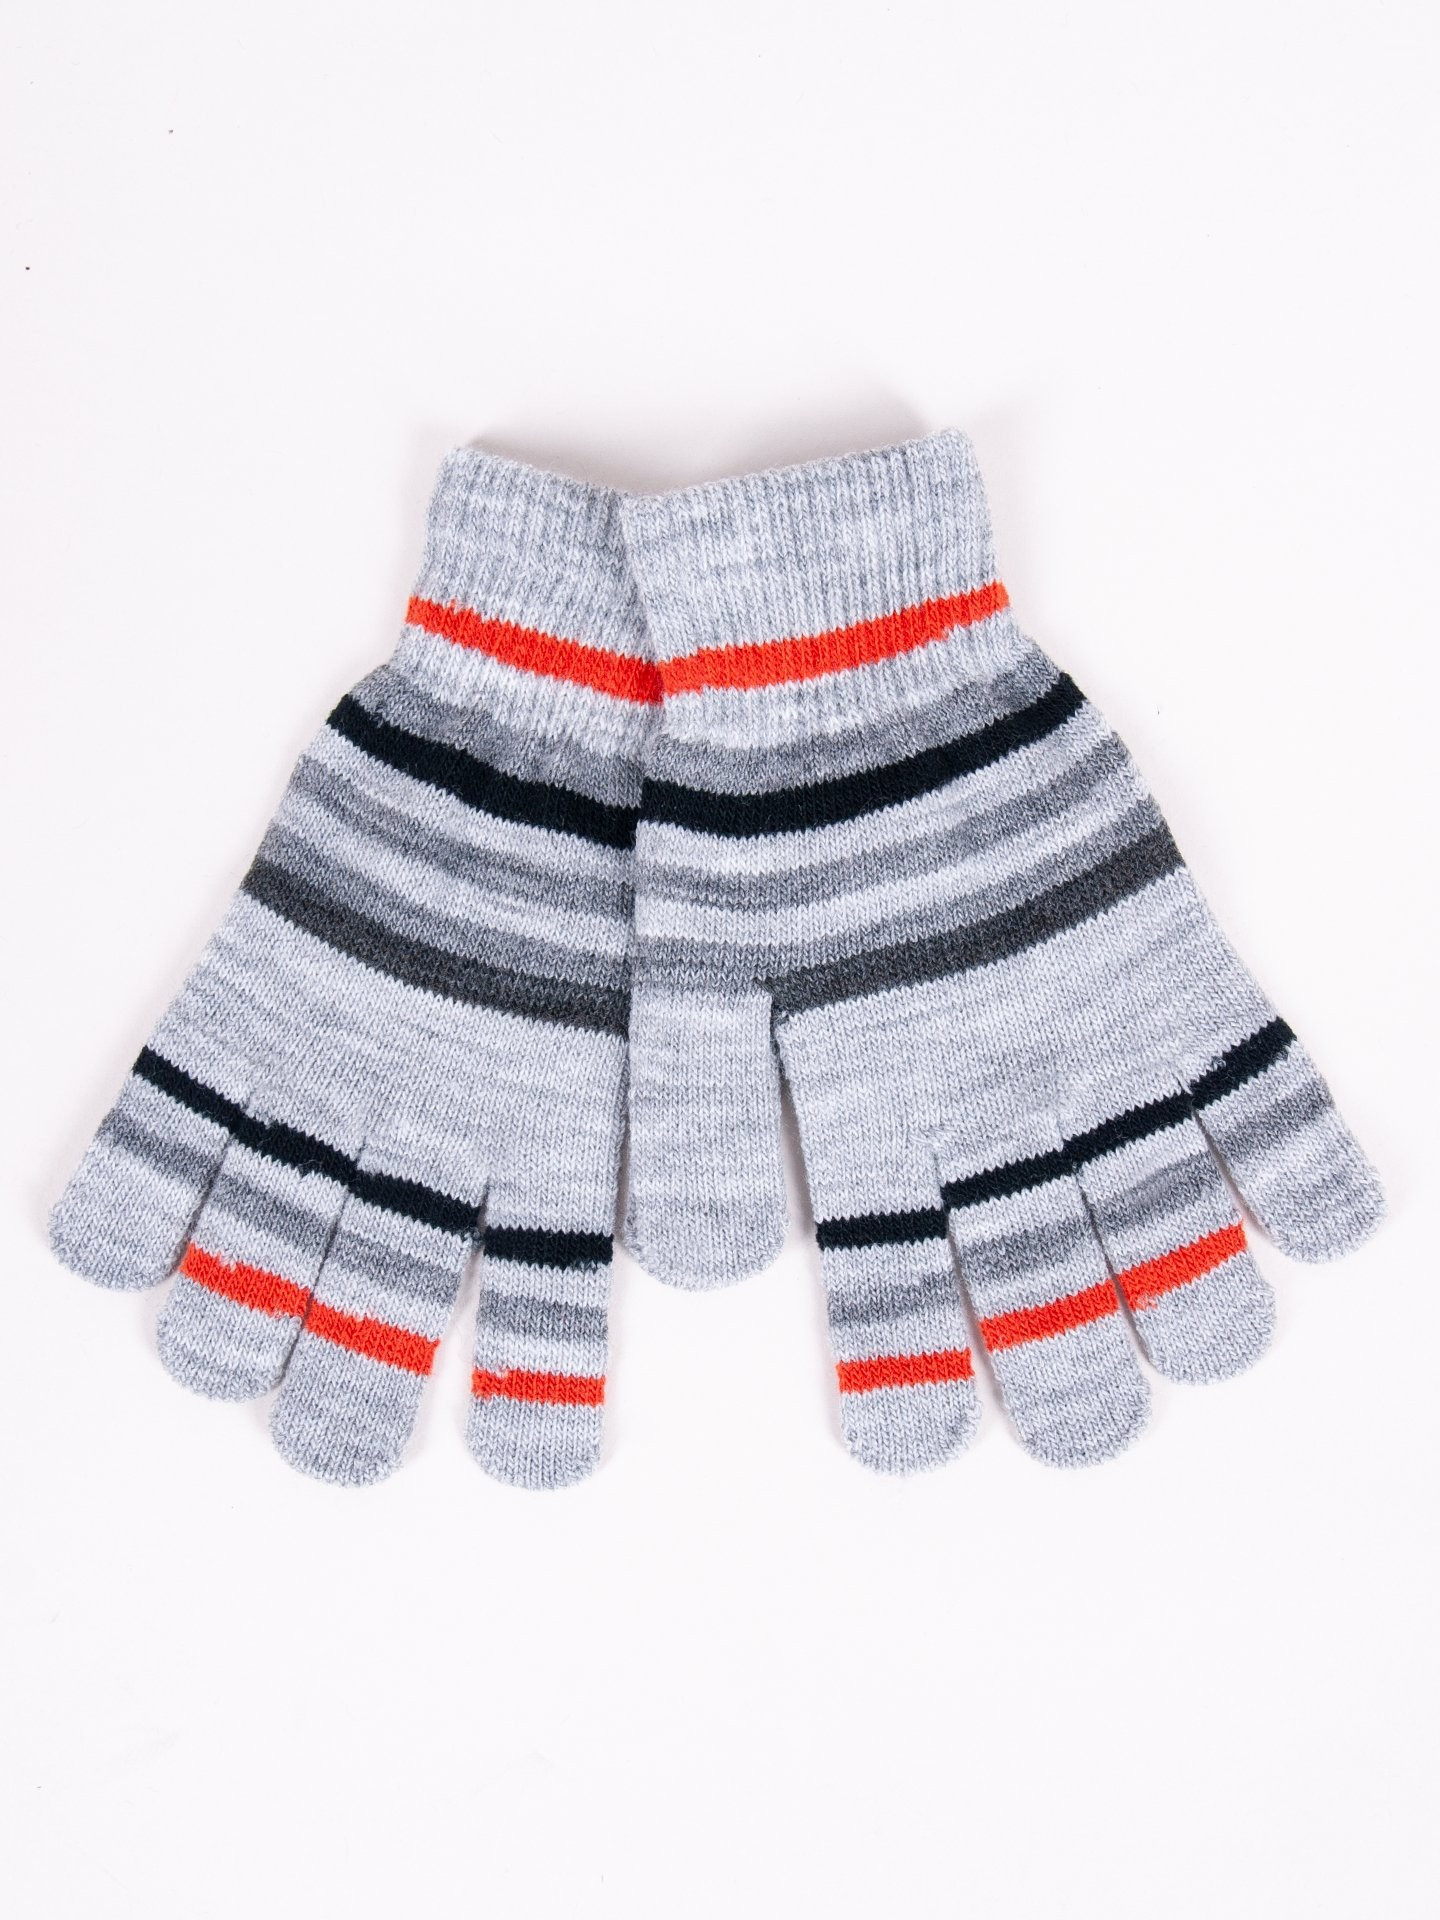 Chlapecké pětiprsté rukavice Yoclub RED-0118C-AA50-005 Grey 18